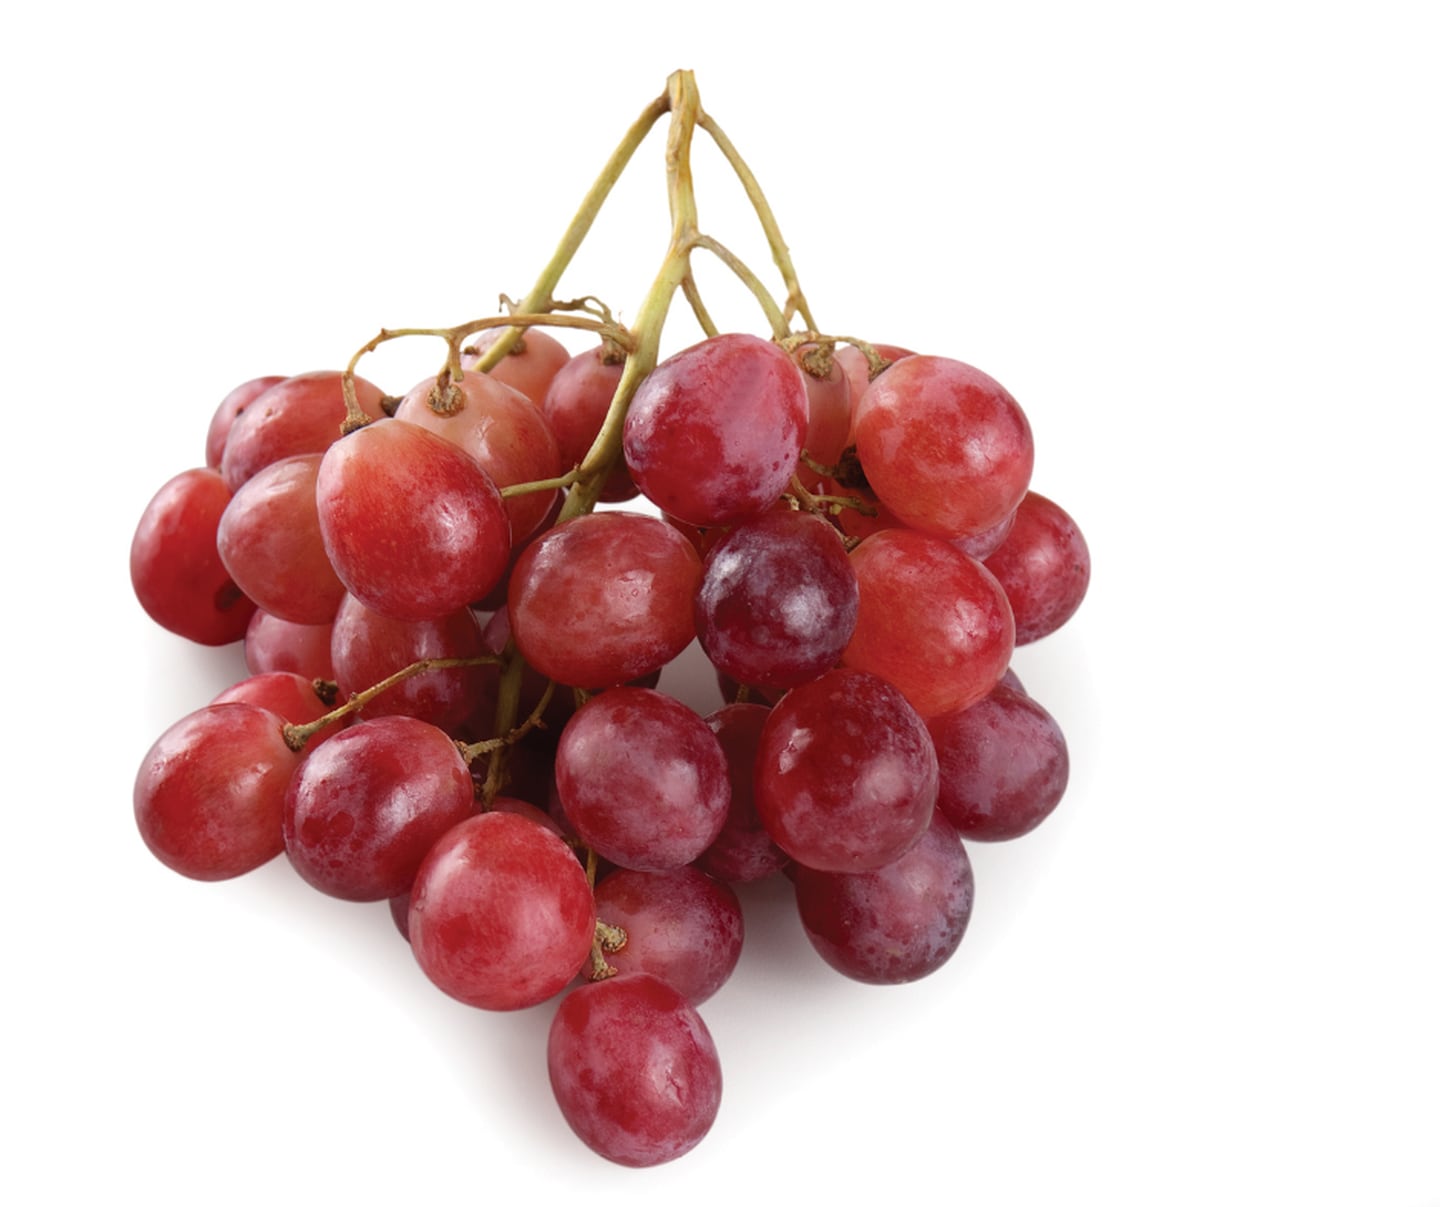 Doce uvas o ½ taza de jugo puro
contienen 60 kcal aproximadamente.
Sus propiedades antioxidantes se
han relacionado con la prevención
de cáncer como el de mama,
próstata y colon. Los flavonoides son
los principales responsables de su
poder antioxidante y están presentes
en la piel
de la uva
y en el vino.